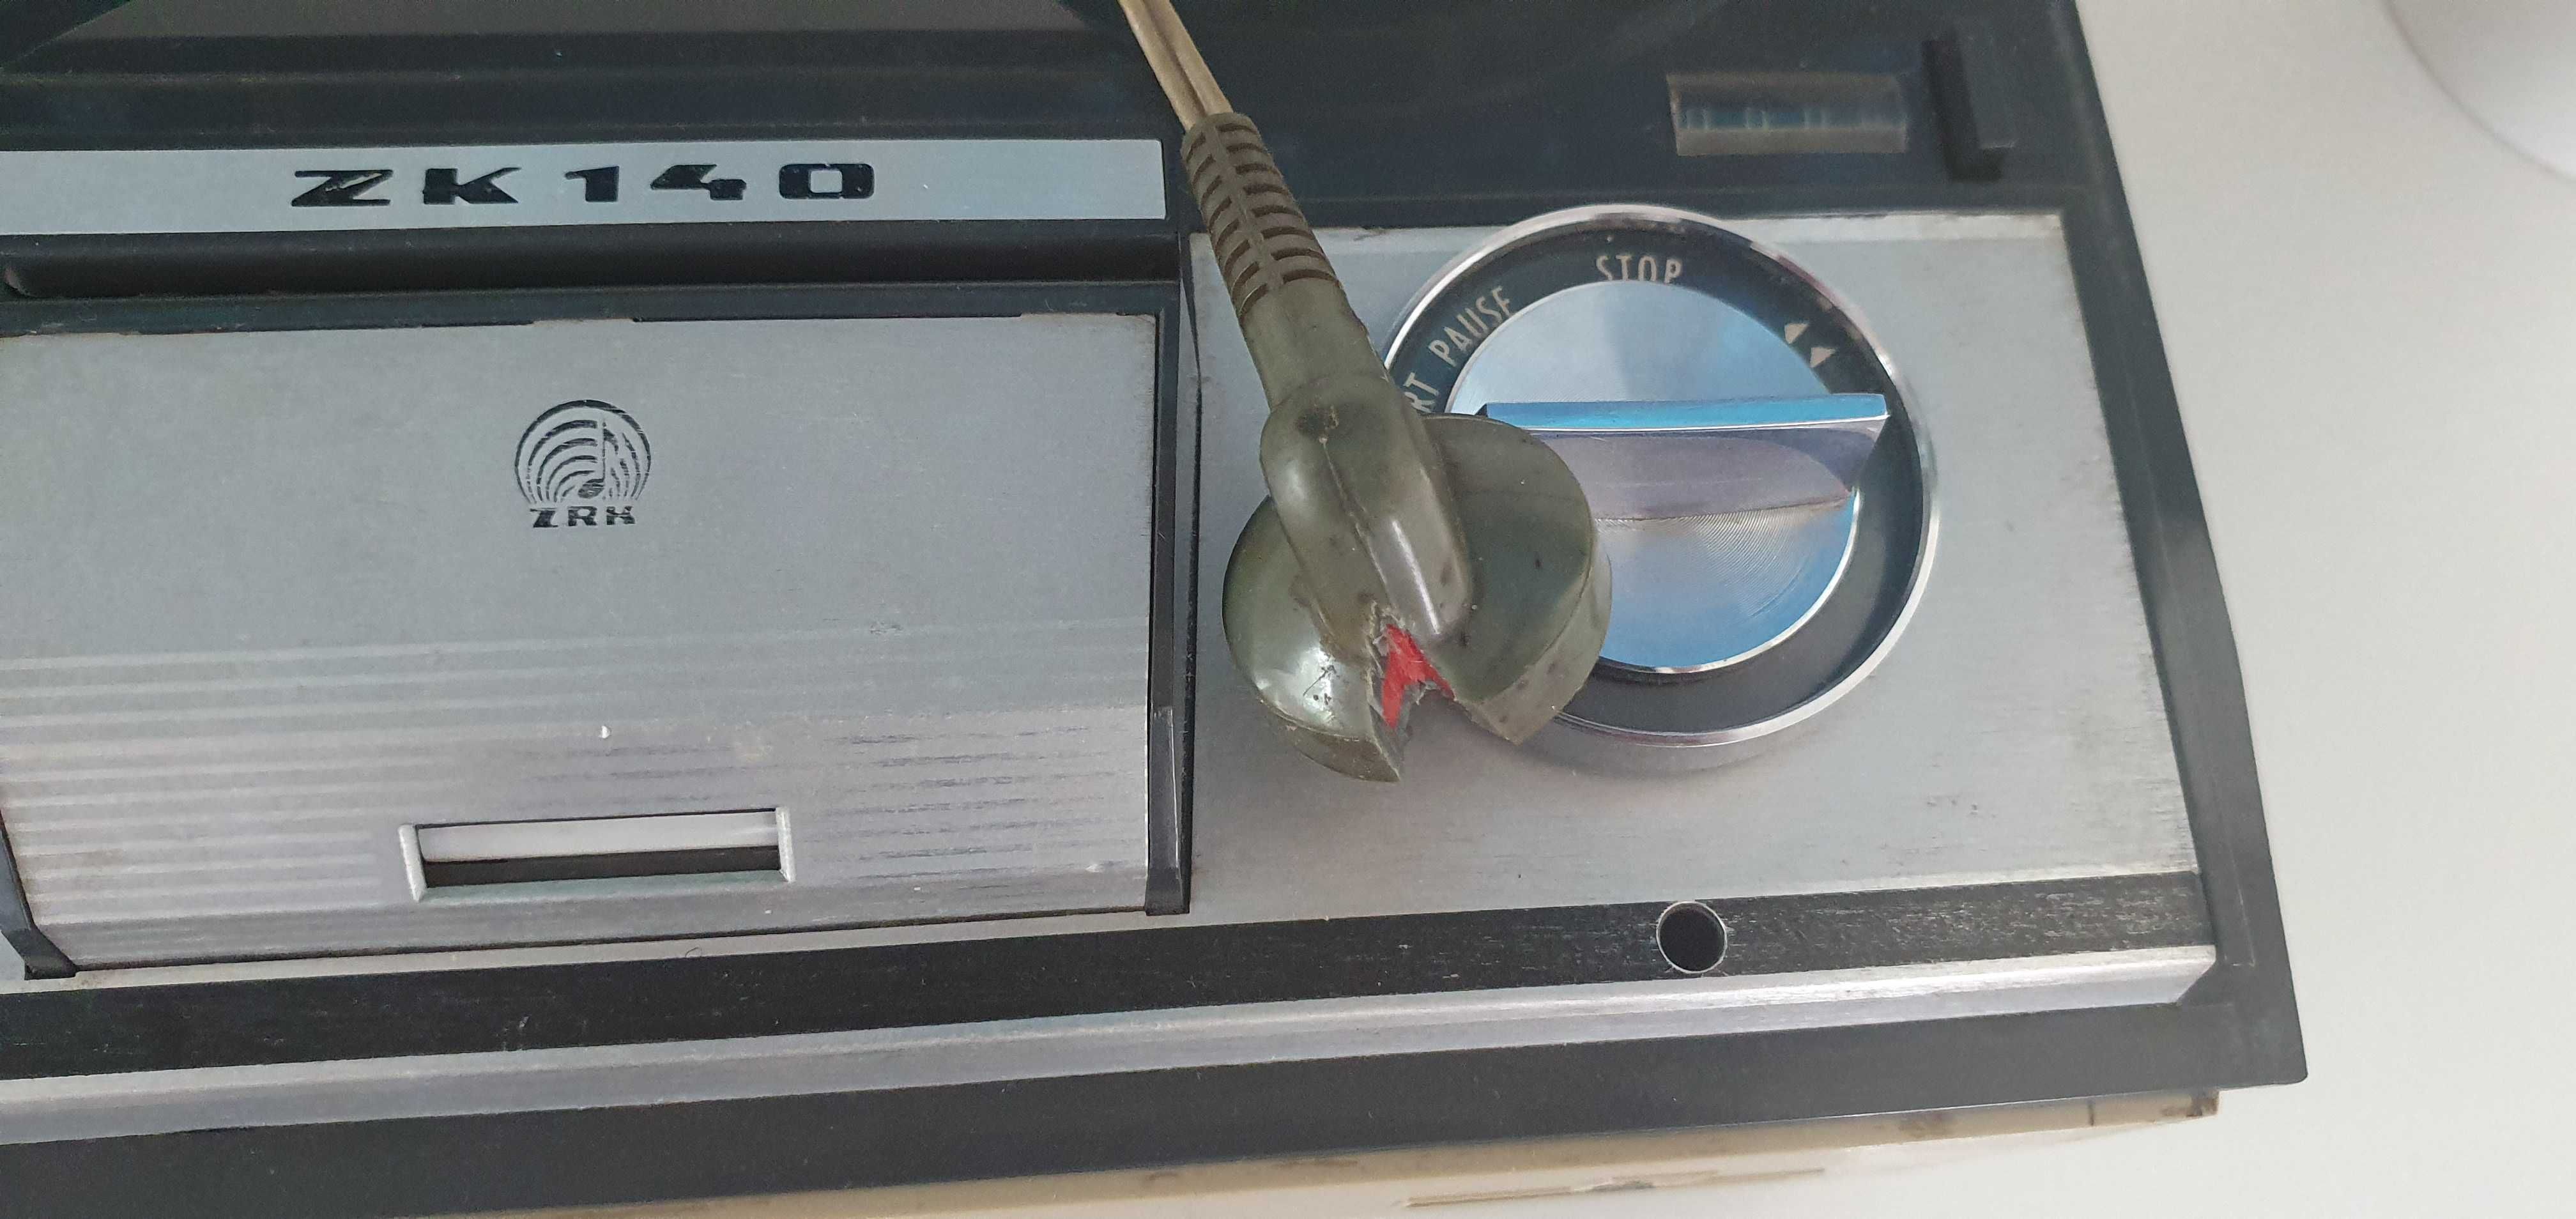 Magnetofon szpulowy UNITRA ZK140 lampowy czterościeżkowy po serwisie